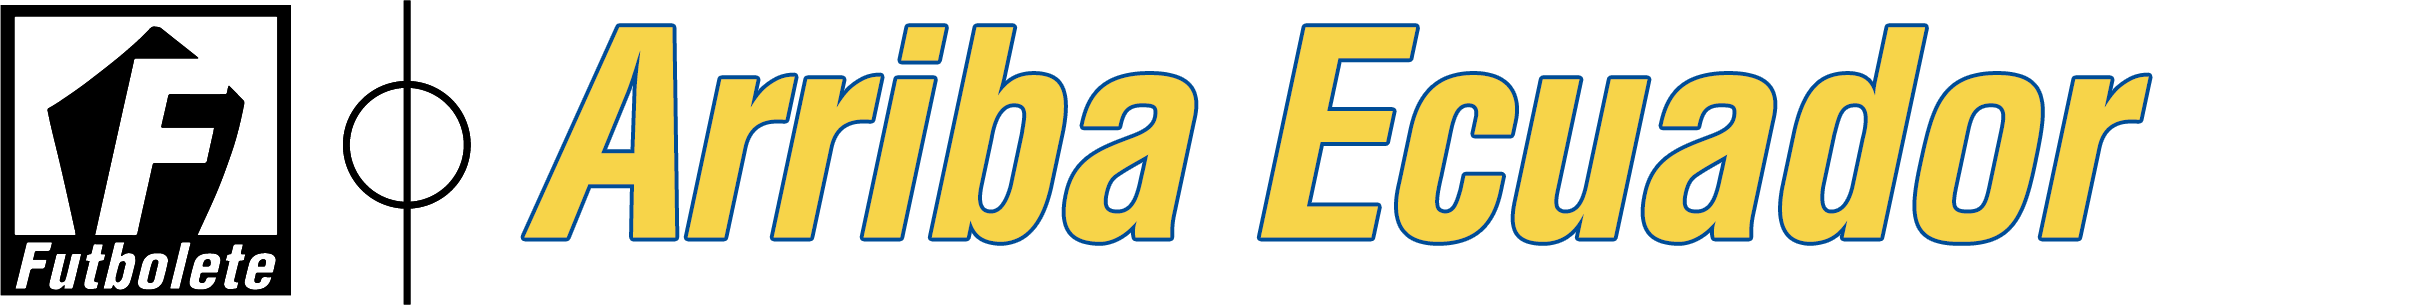 Logo Arriba Ecuador